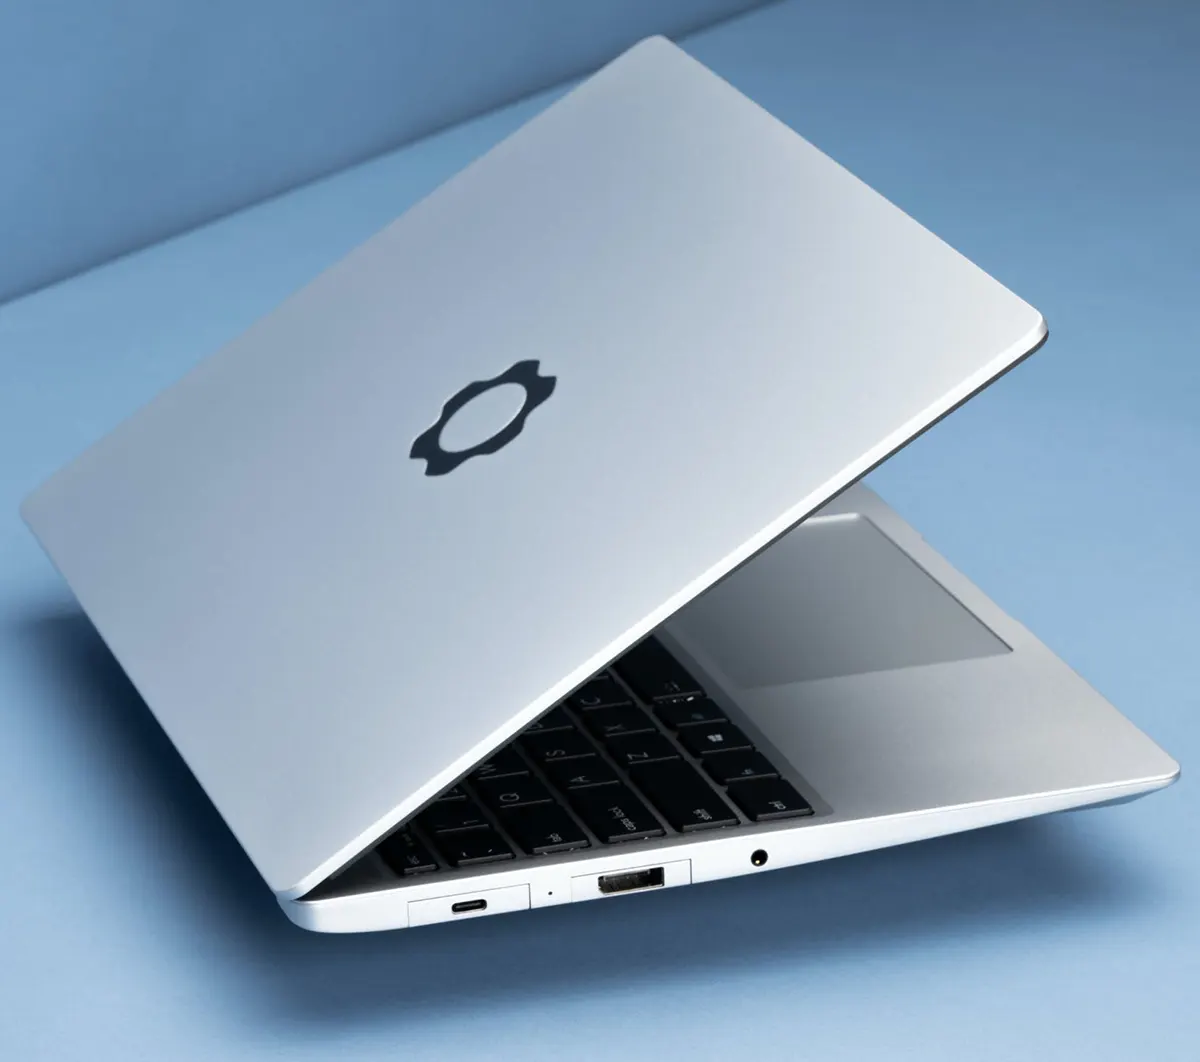 Framework Laptop:
Chiếc laptop dạng module dễ nâng cấp nhất thế giới ra mắt,
mỏng nhẹ còn hơn cả MacBook Pro M1 của Apple